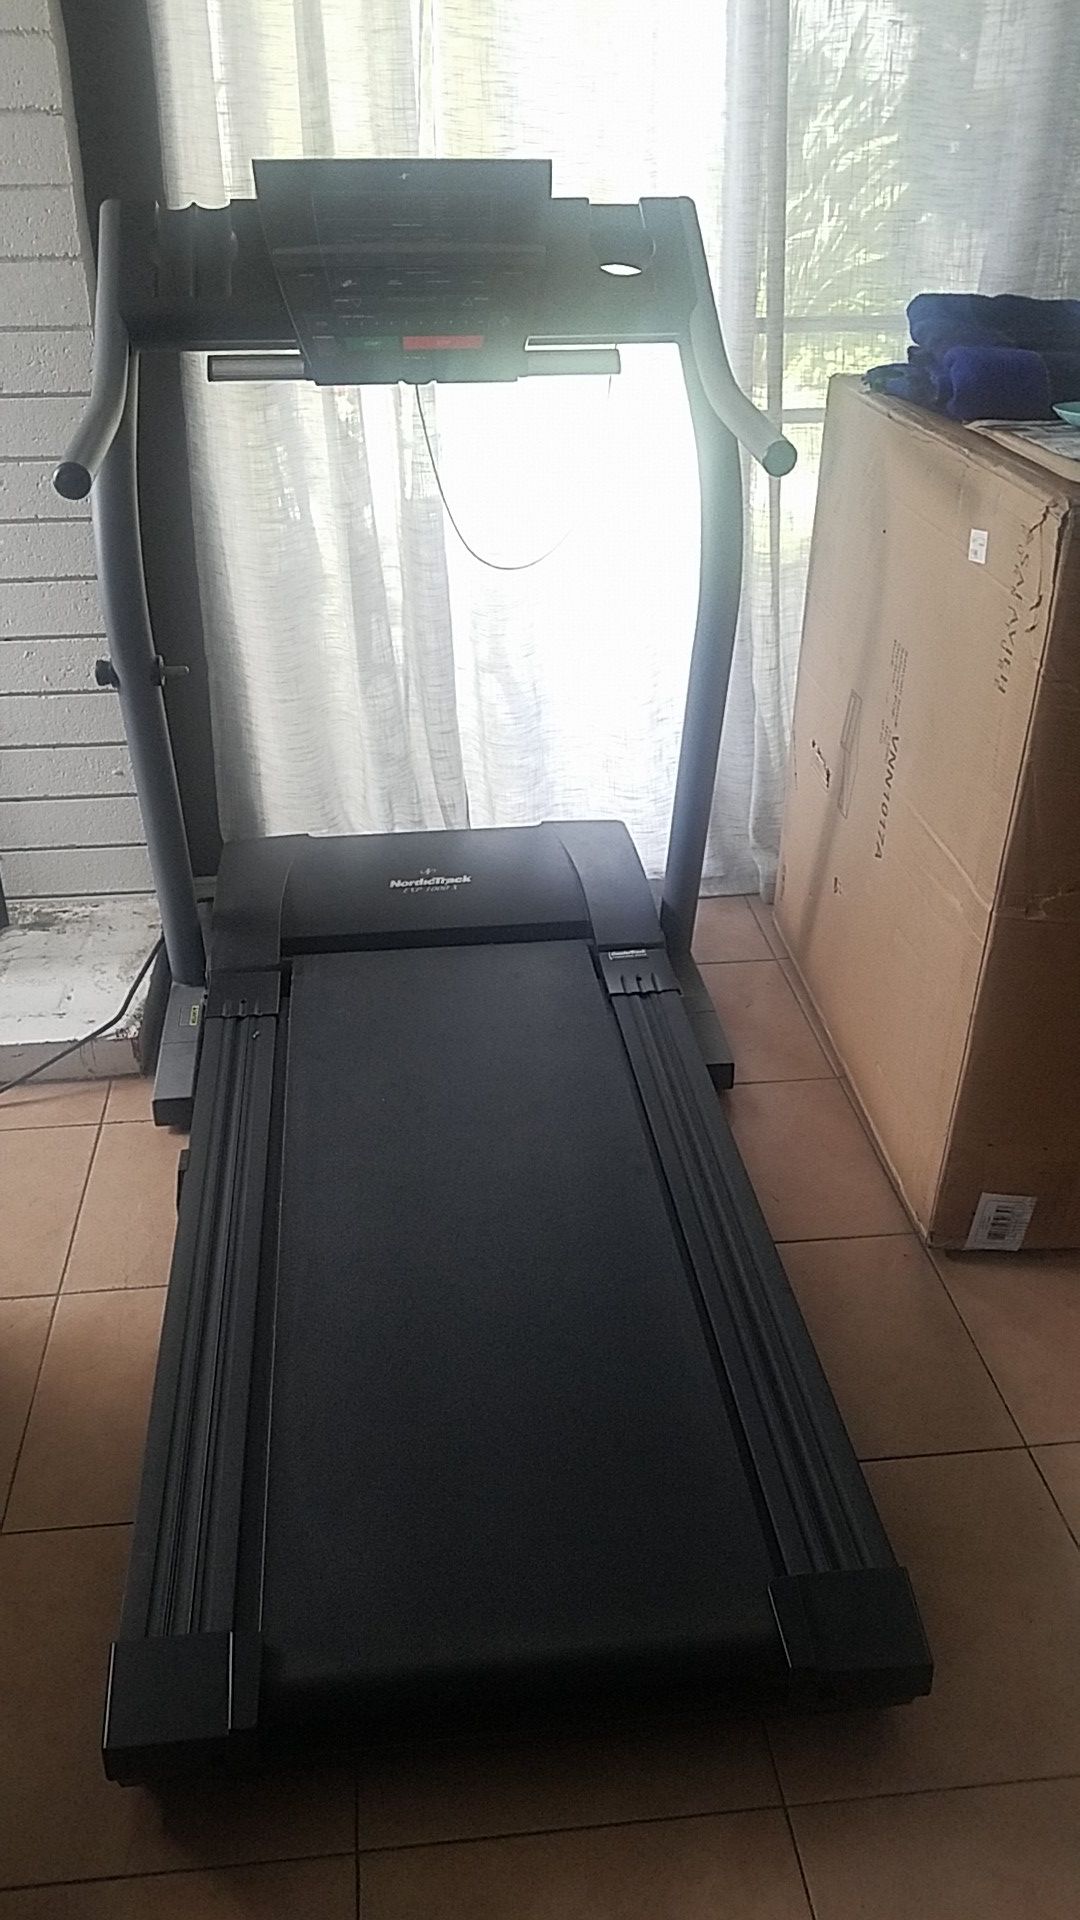 NordicTrack EXP1000 Treadmill